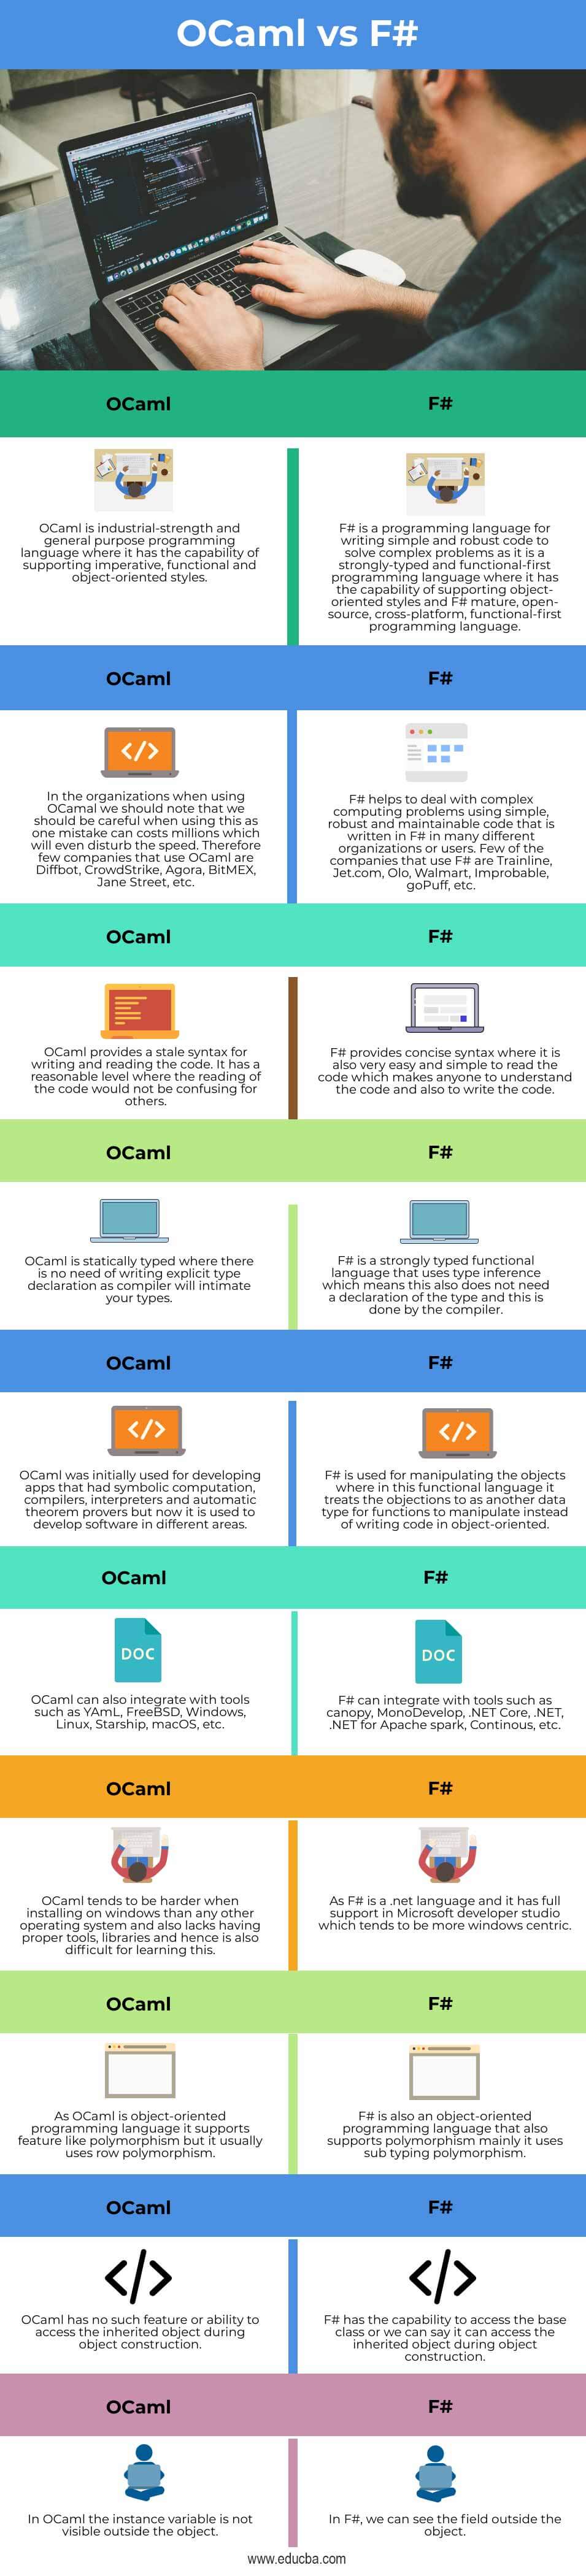 OCaml-vs-F#-info